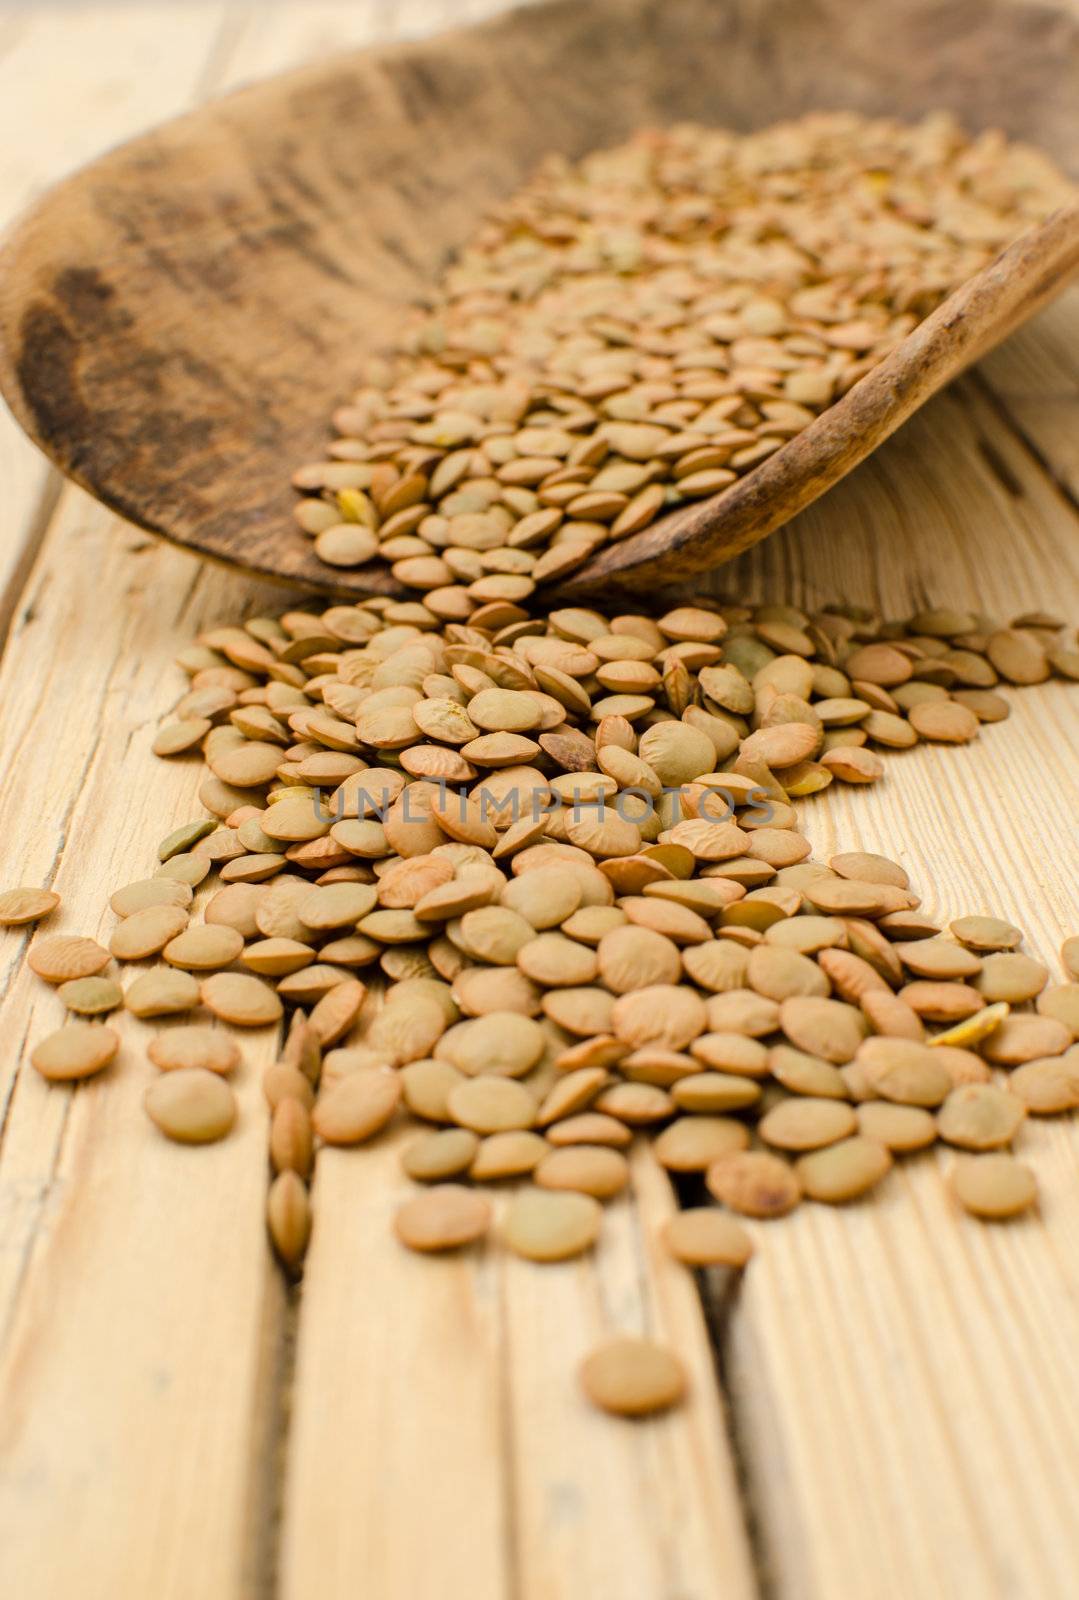 Lentil seeds on a wooden background